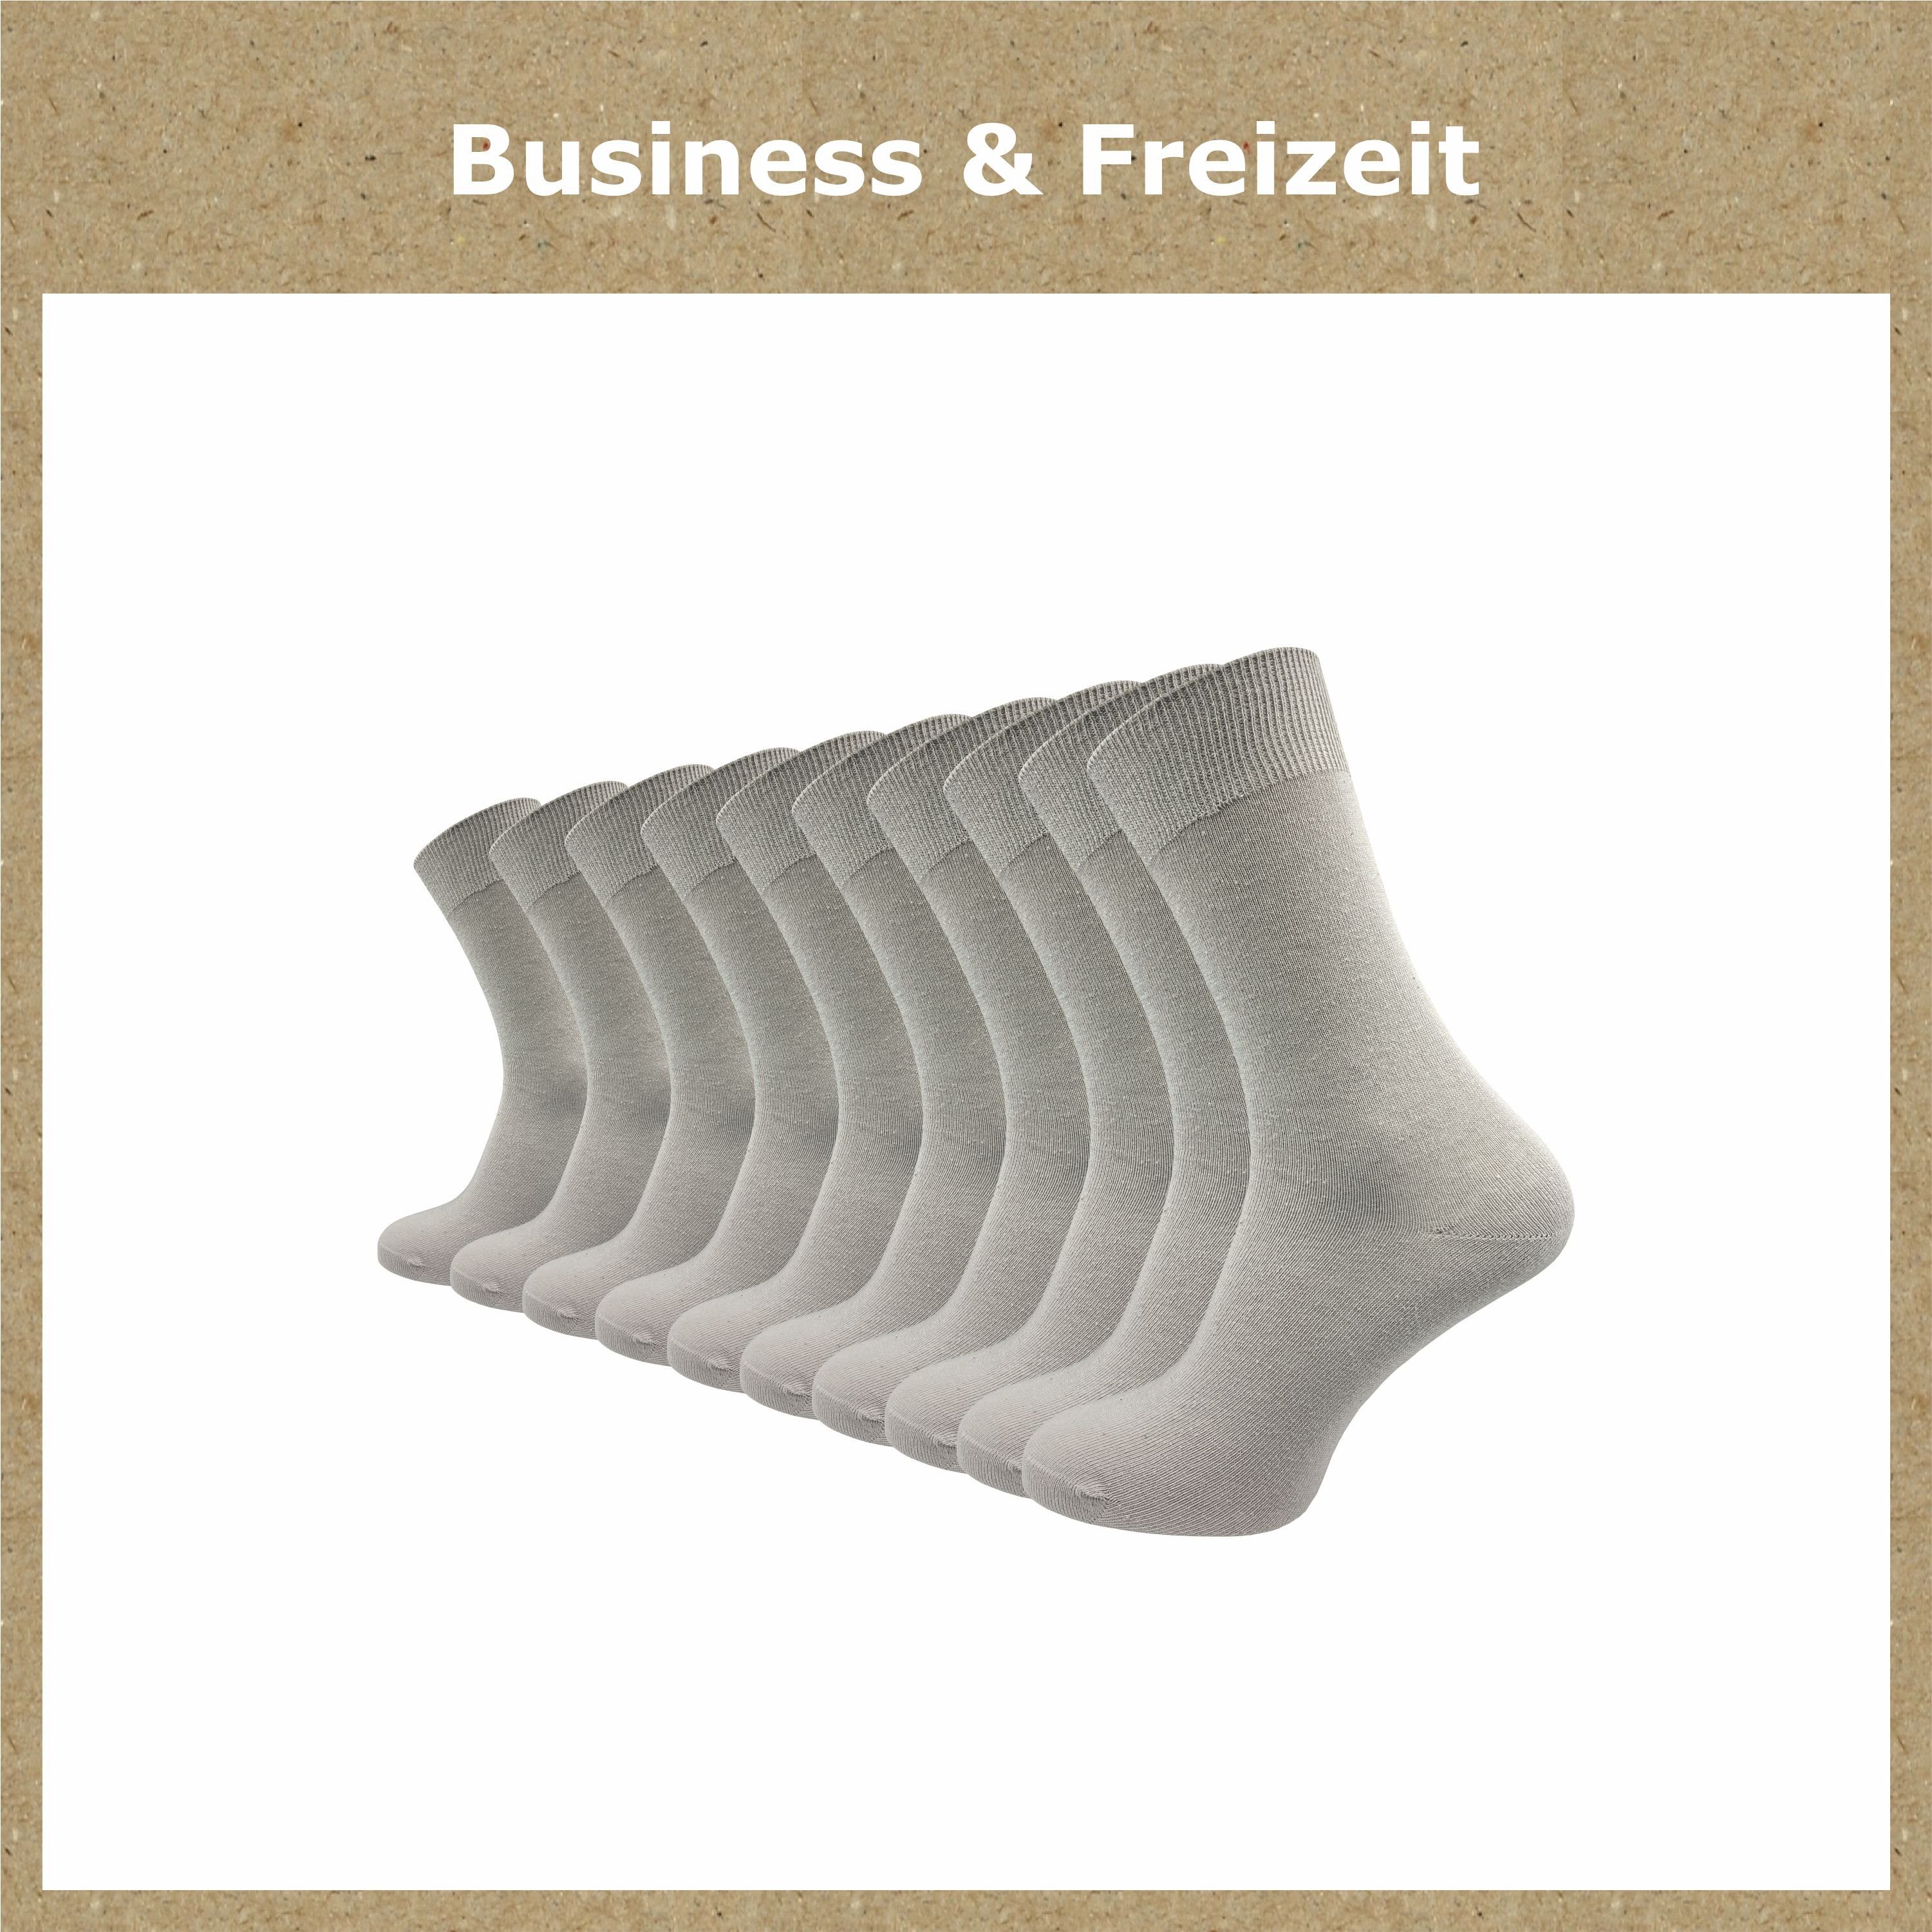 GAWILO Socken mit Baumwolle, Damen (10 und 100% und Herren für Freizeit Business hellgrau venenfreundlichem Komfortbund Paar) aus